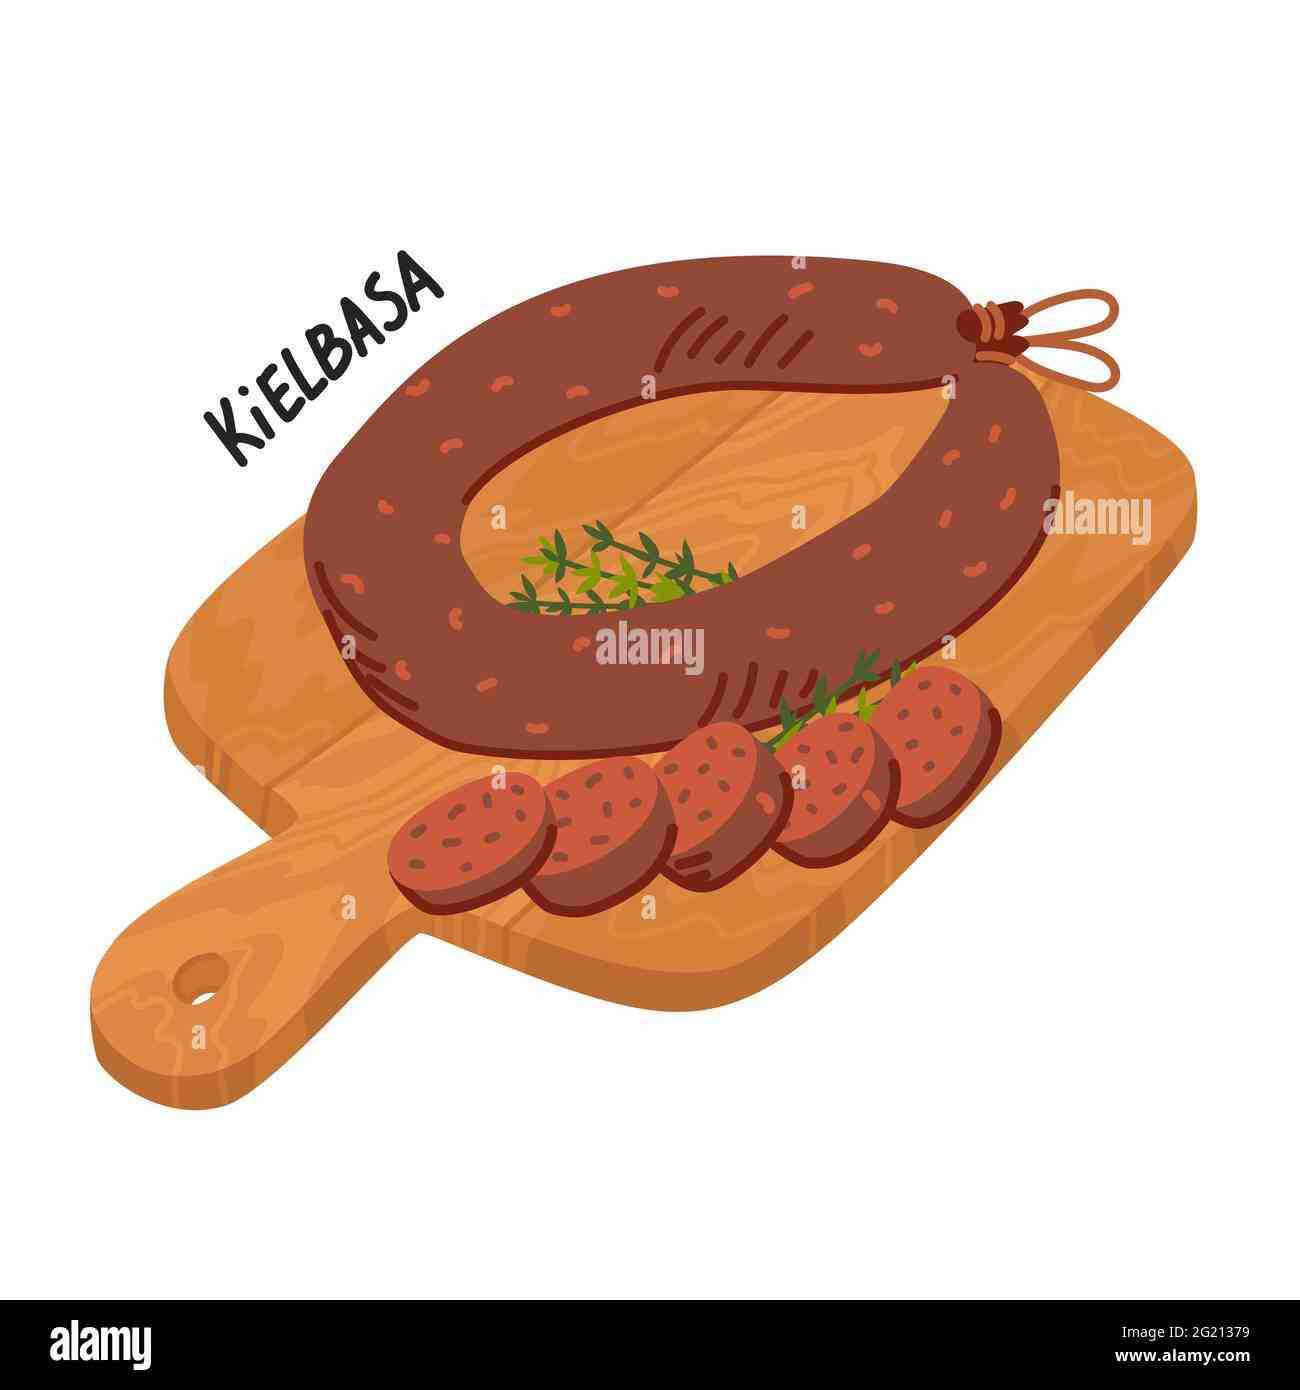 What makes a sausage a kielbasa?